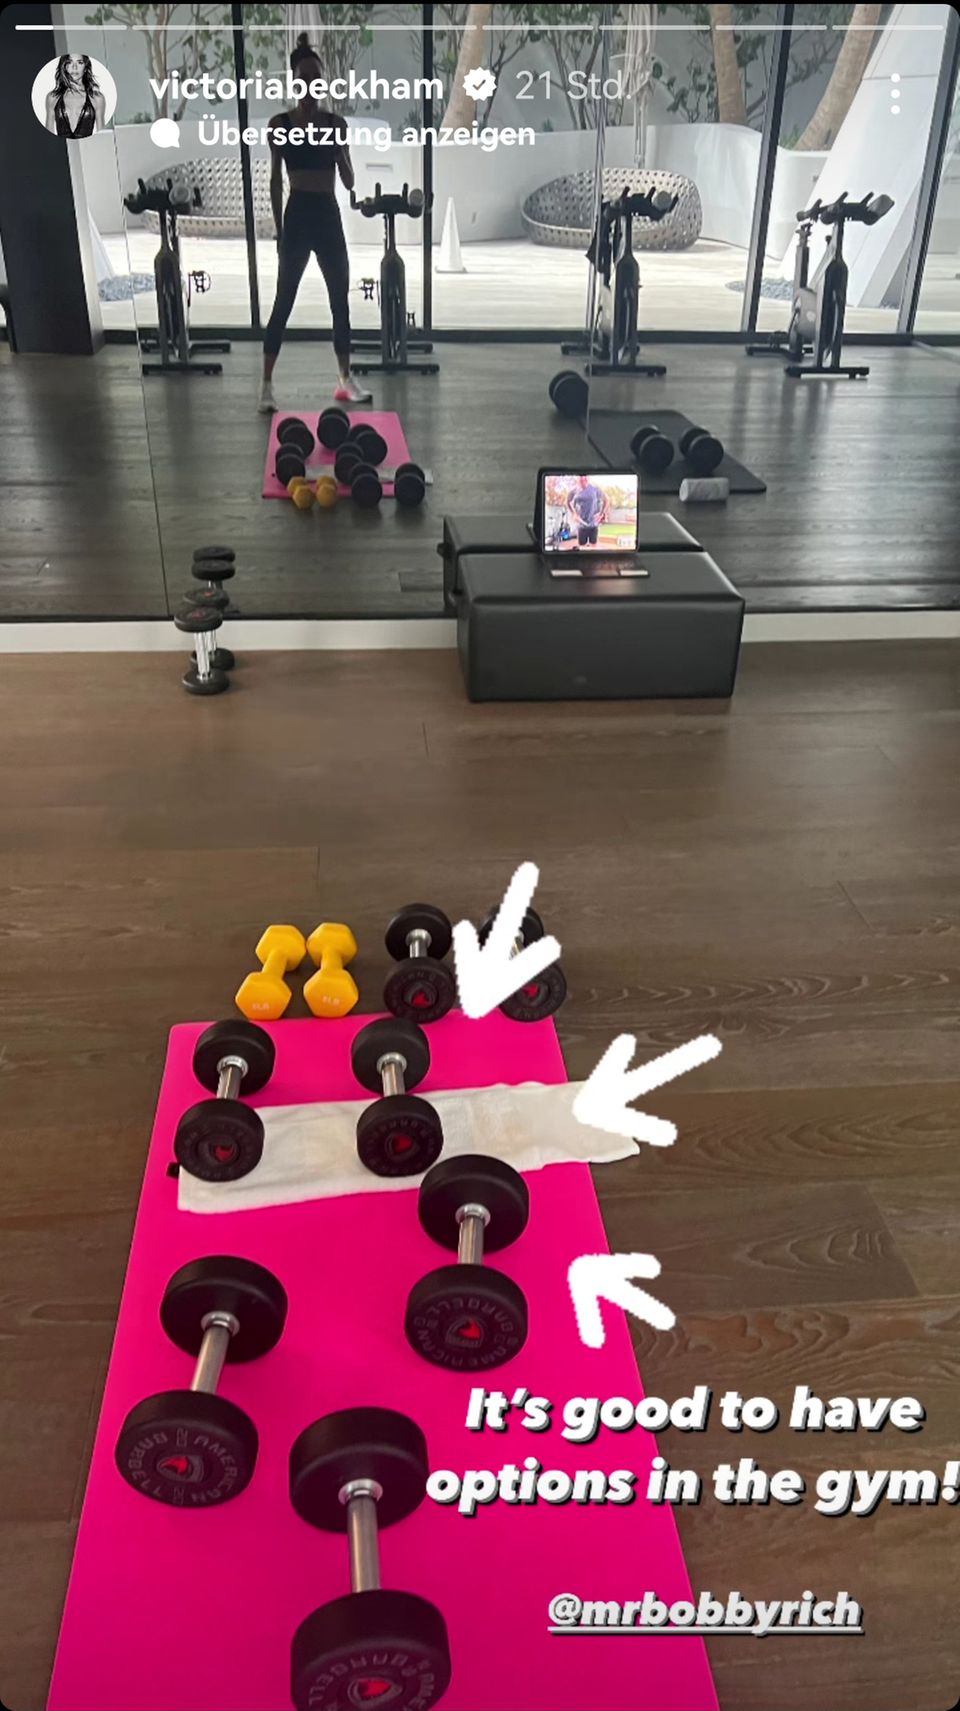 Victoria Beckham gewährt auf Instagram Einblick in ihr privates Fitnessstudio